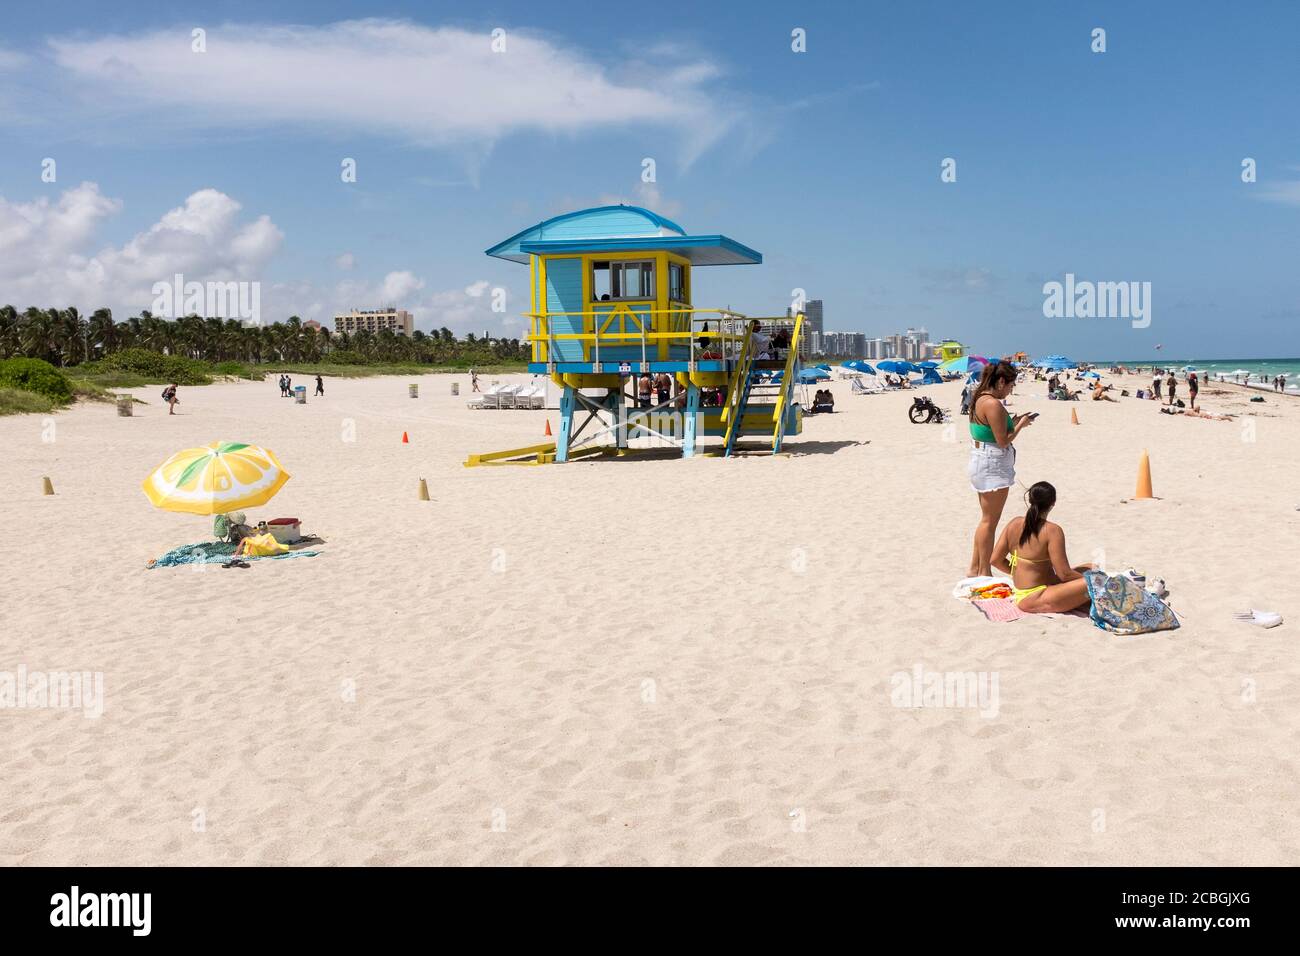 Le persone che si godono una giornata sulla spiaggia con uno stand bagnino sullo sfondo, a South Beach, Miami Beach, Florida, USA. Foto Stock